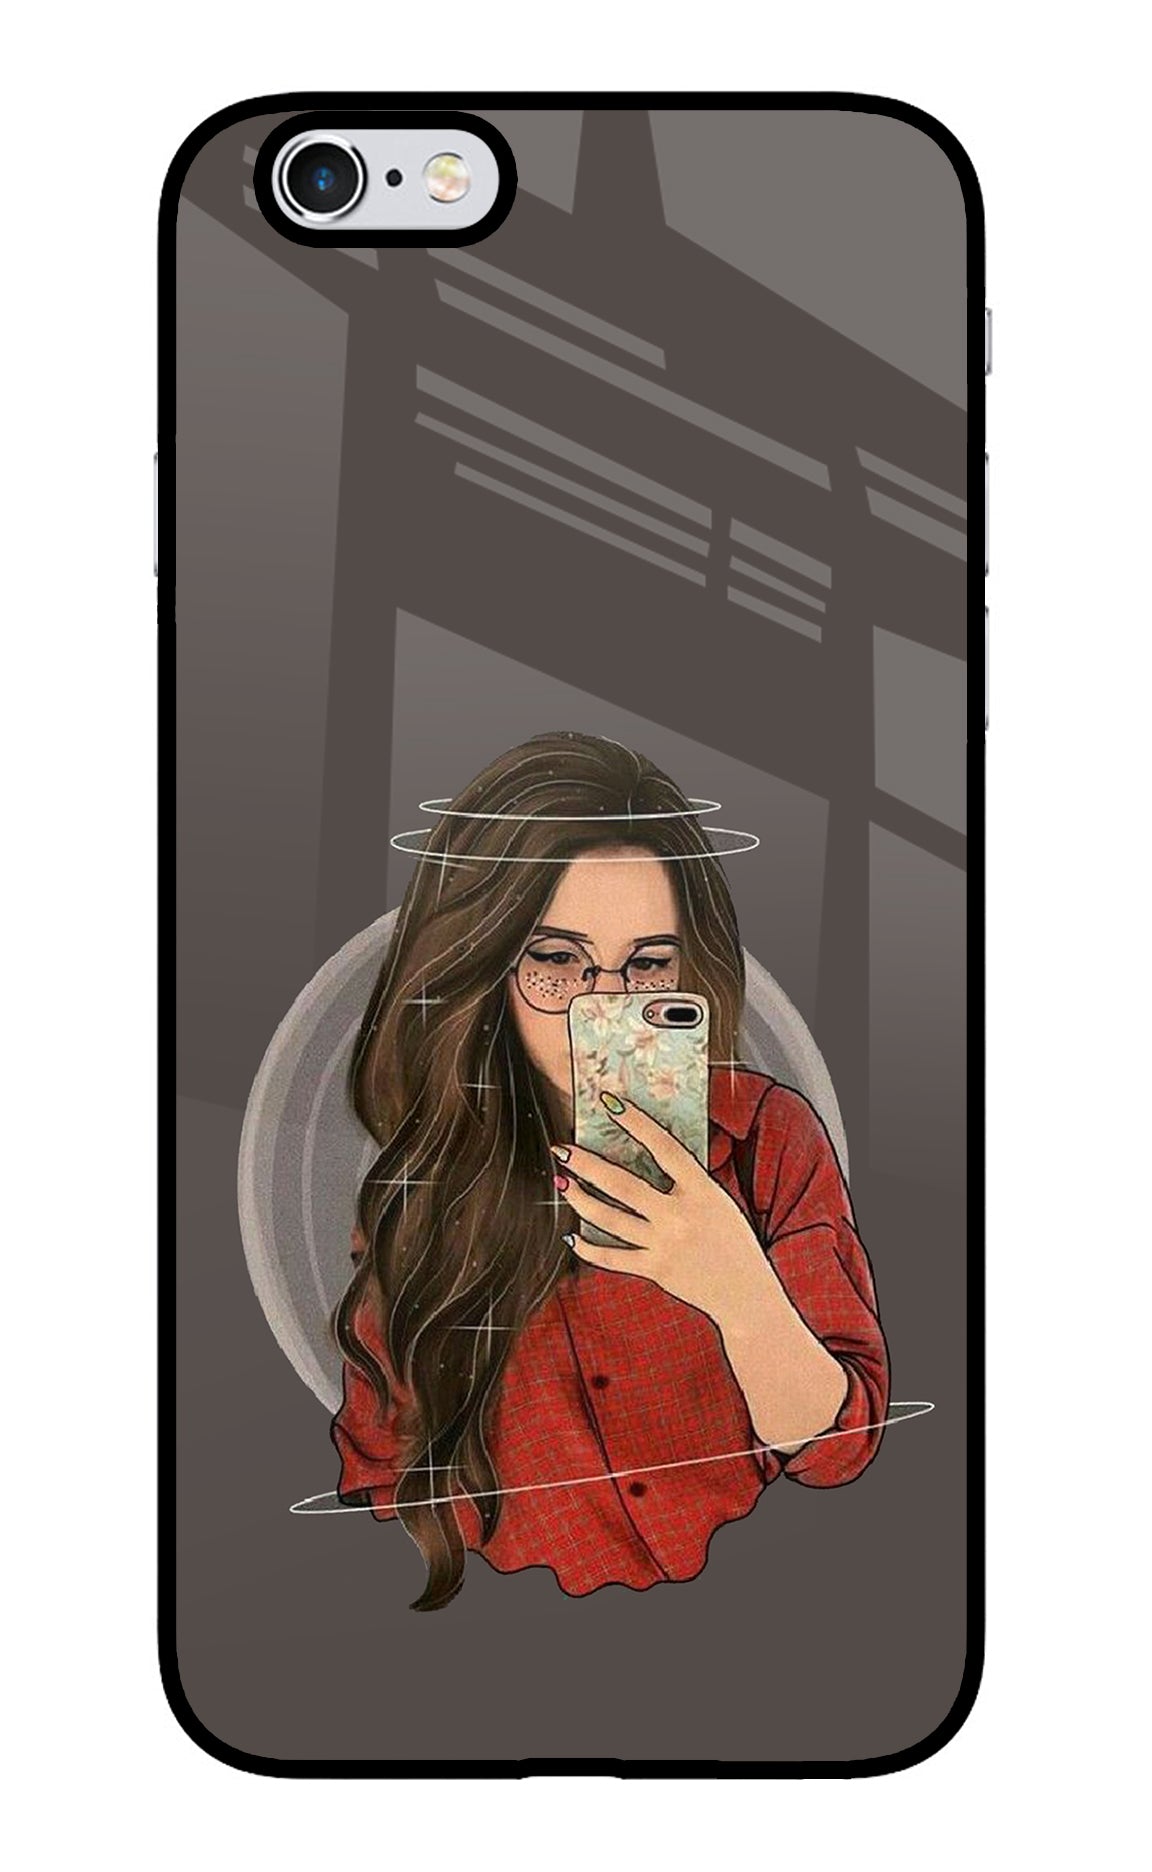 Selfie Queen iPhone 6/6s Glass Case